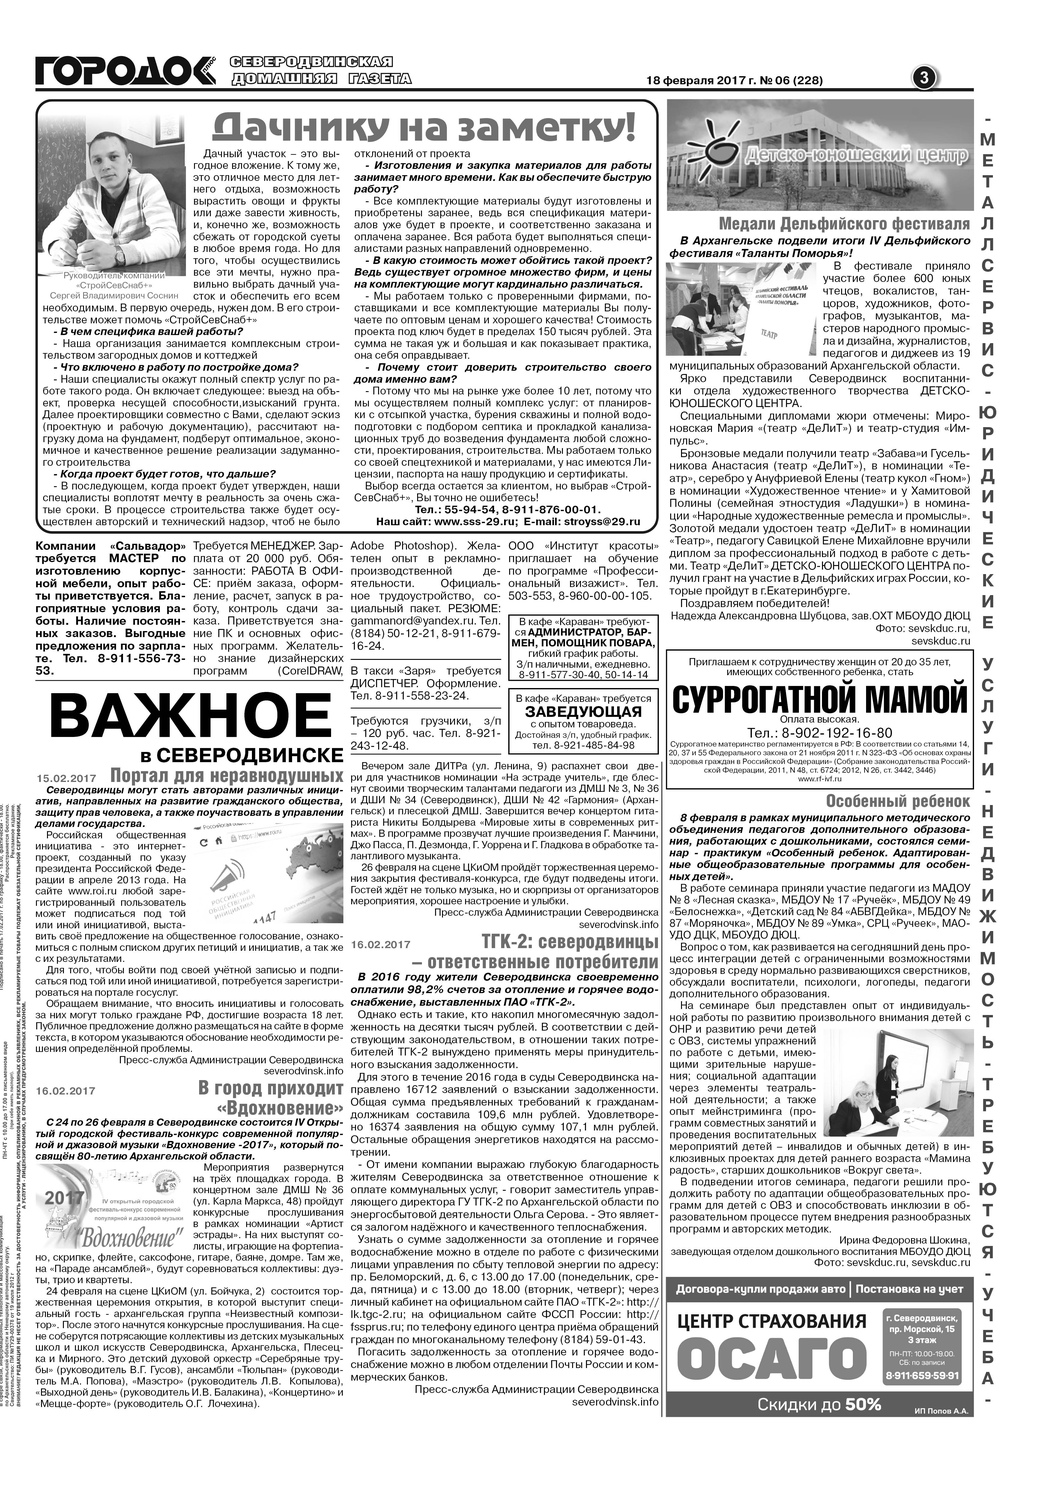 Городок плюс, выпуск номер 6 от 18 февраля 2017 года, страница 3.